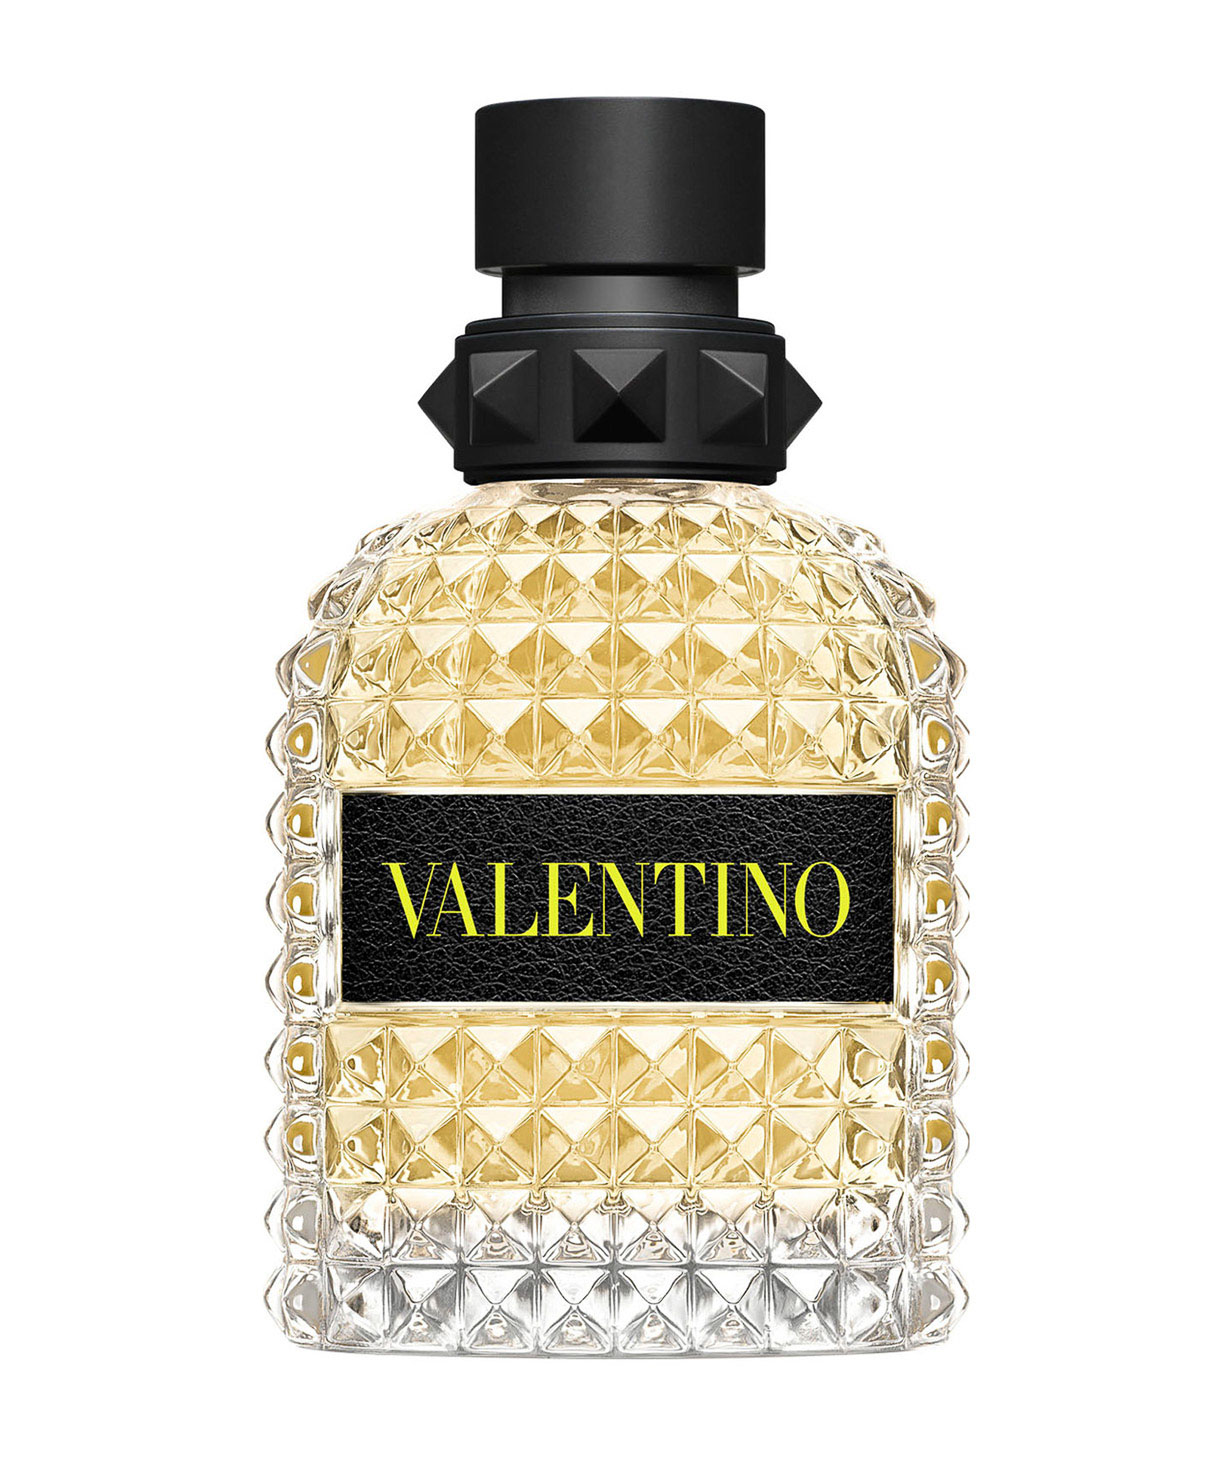 Օծանելիք «Valentino» Uomo Born in Roma Yellow Dream-50մլ